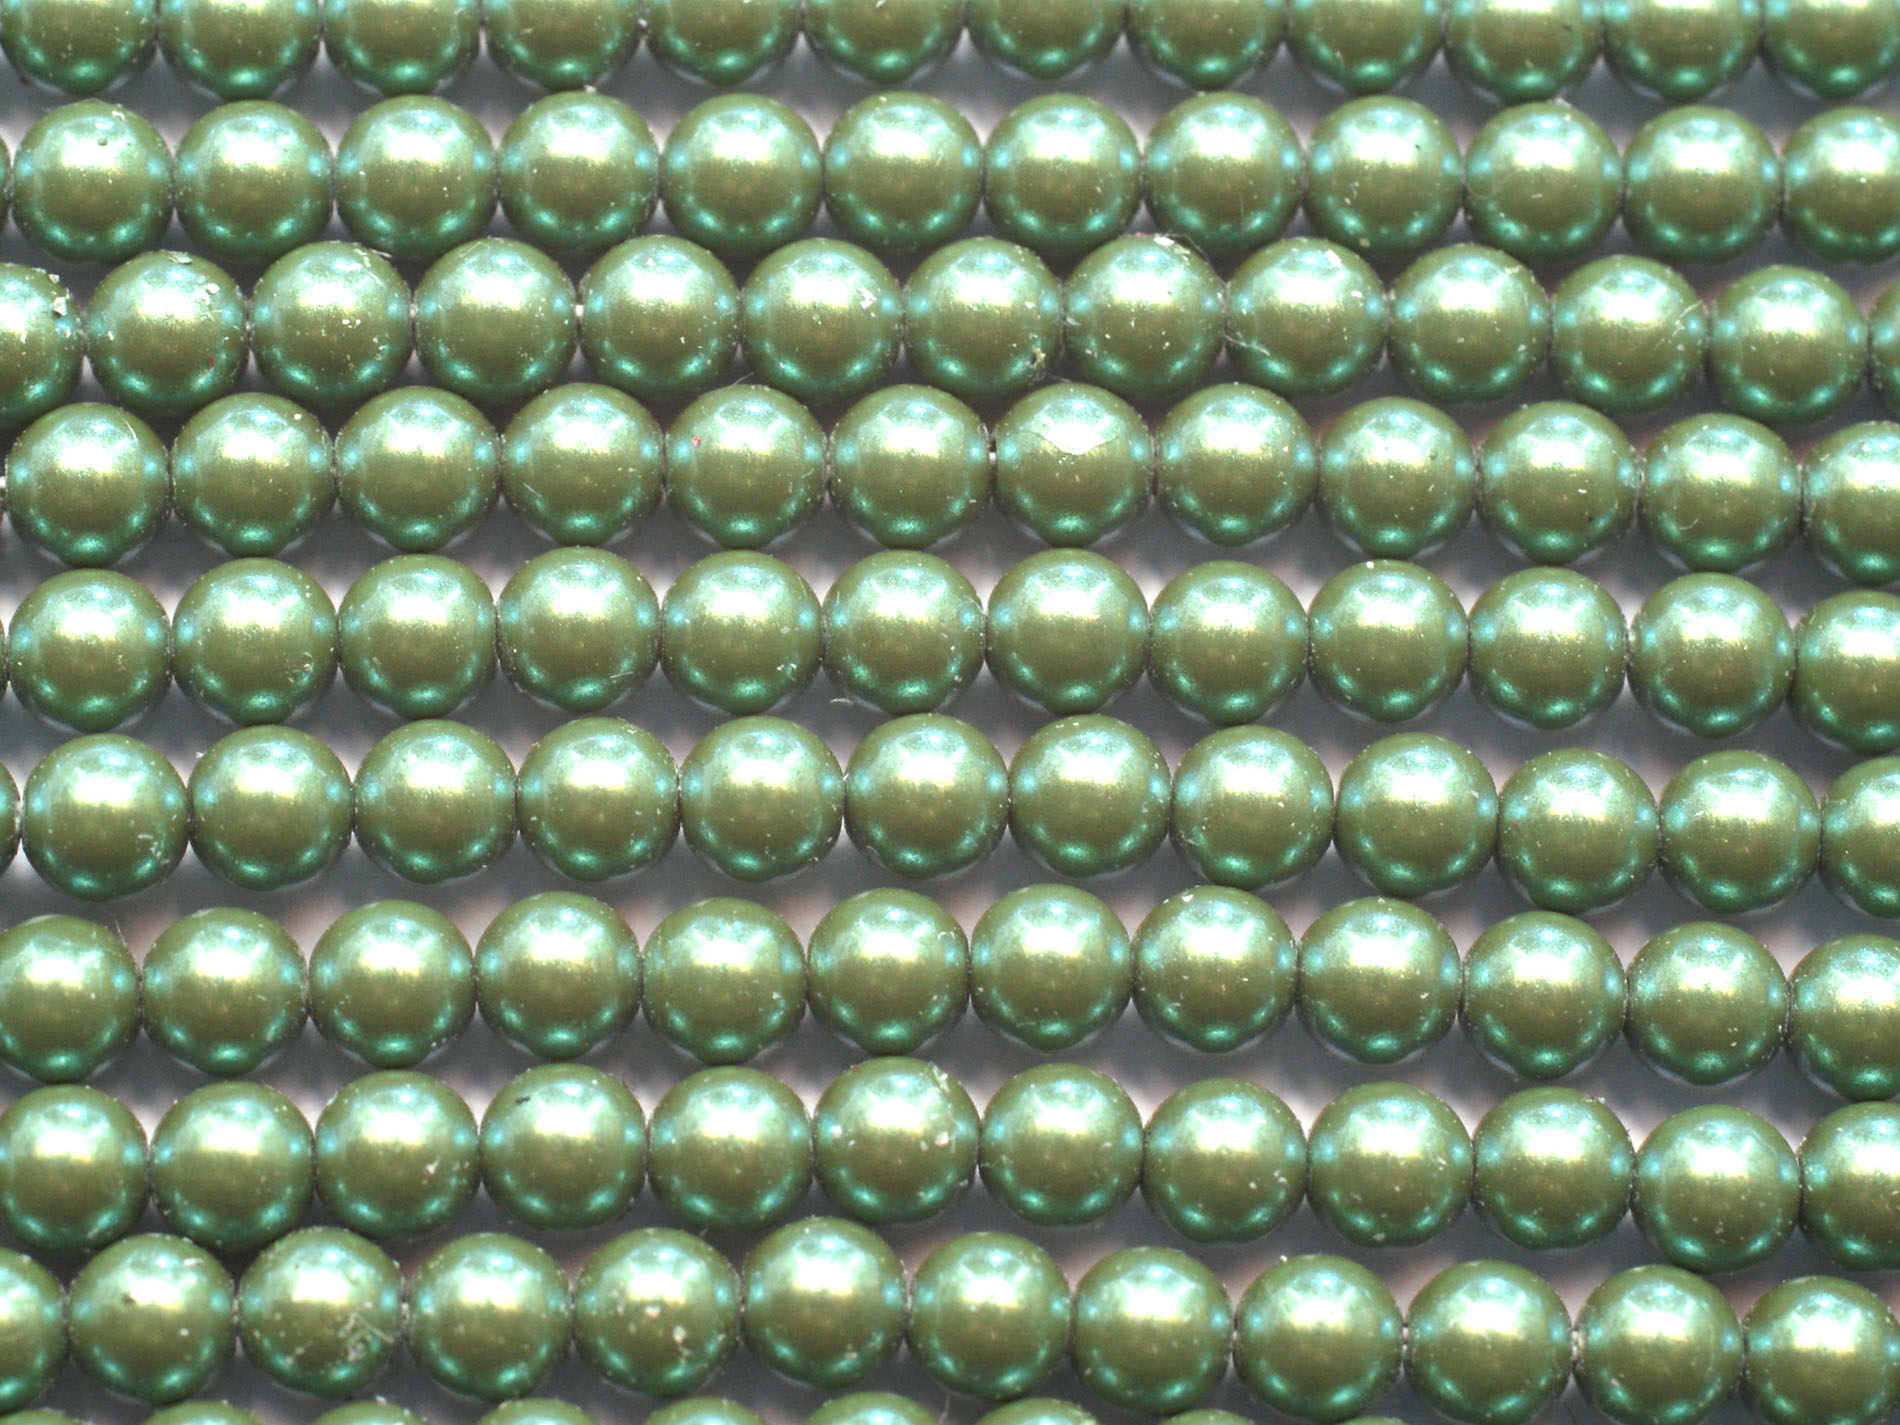 30 st Preciosa Nacre Pearl, 4 mm, Pearlscent Green